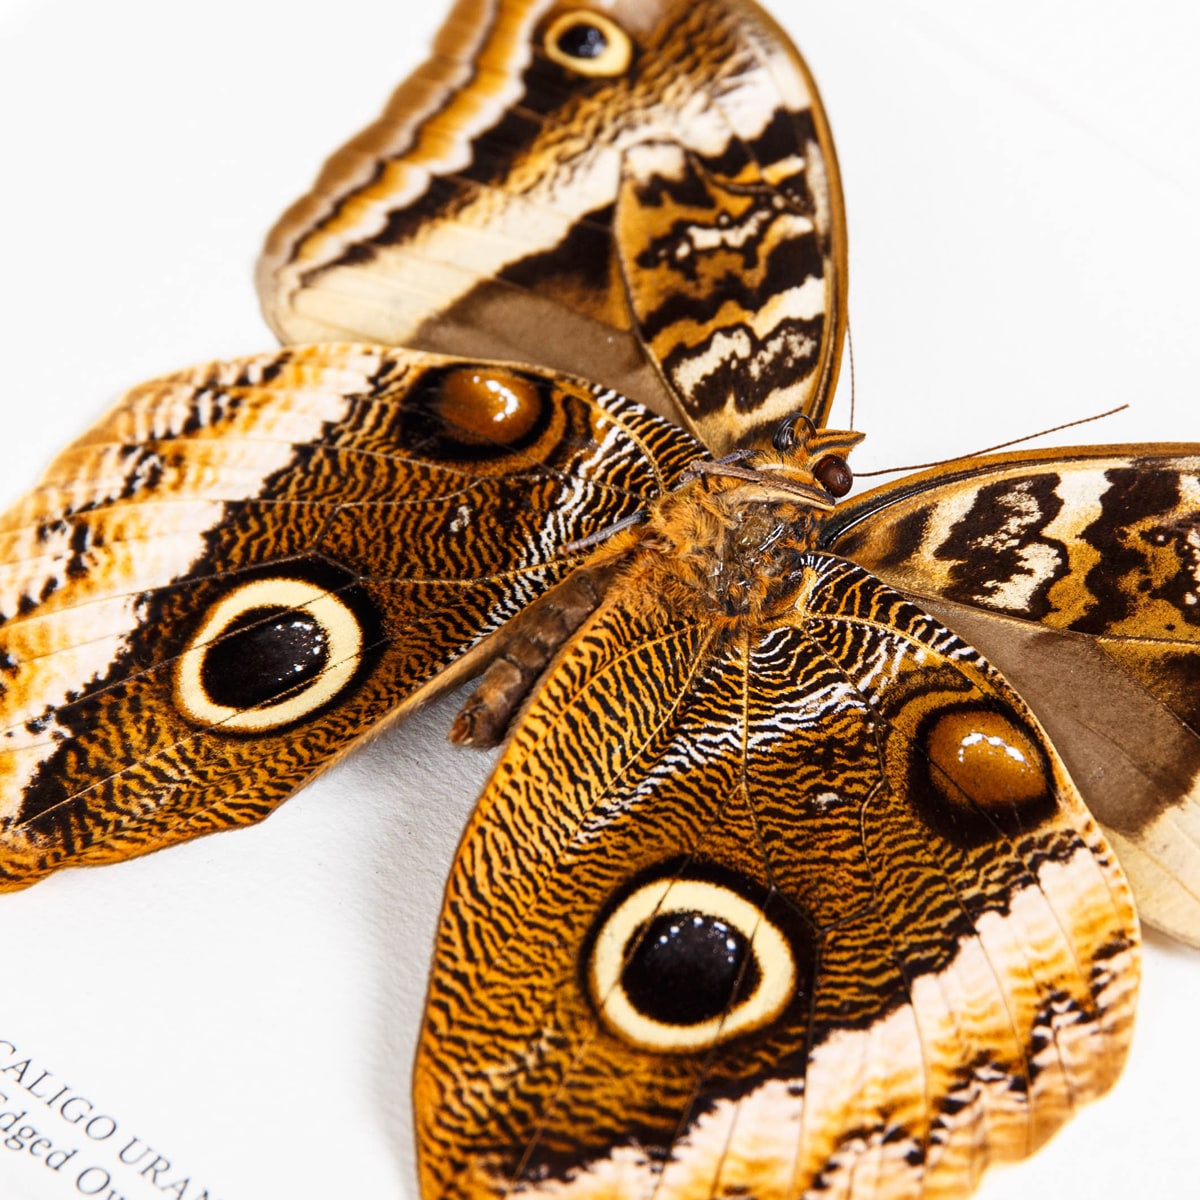 Gold Edged Owl Butterfly Ventral Side in Box Frame (Caligo uranus)